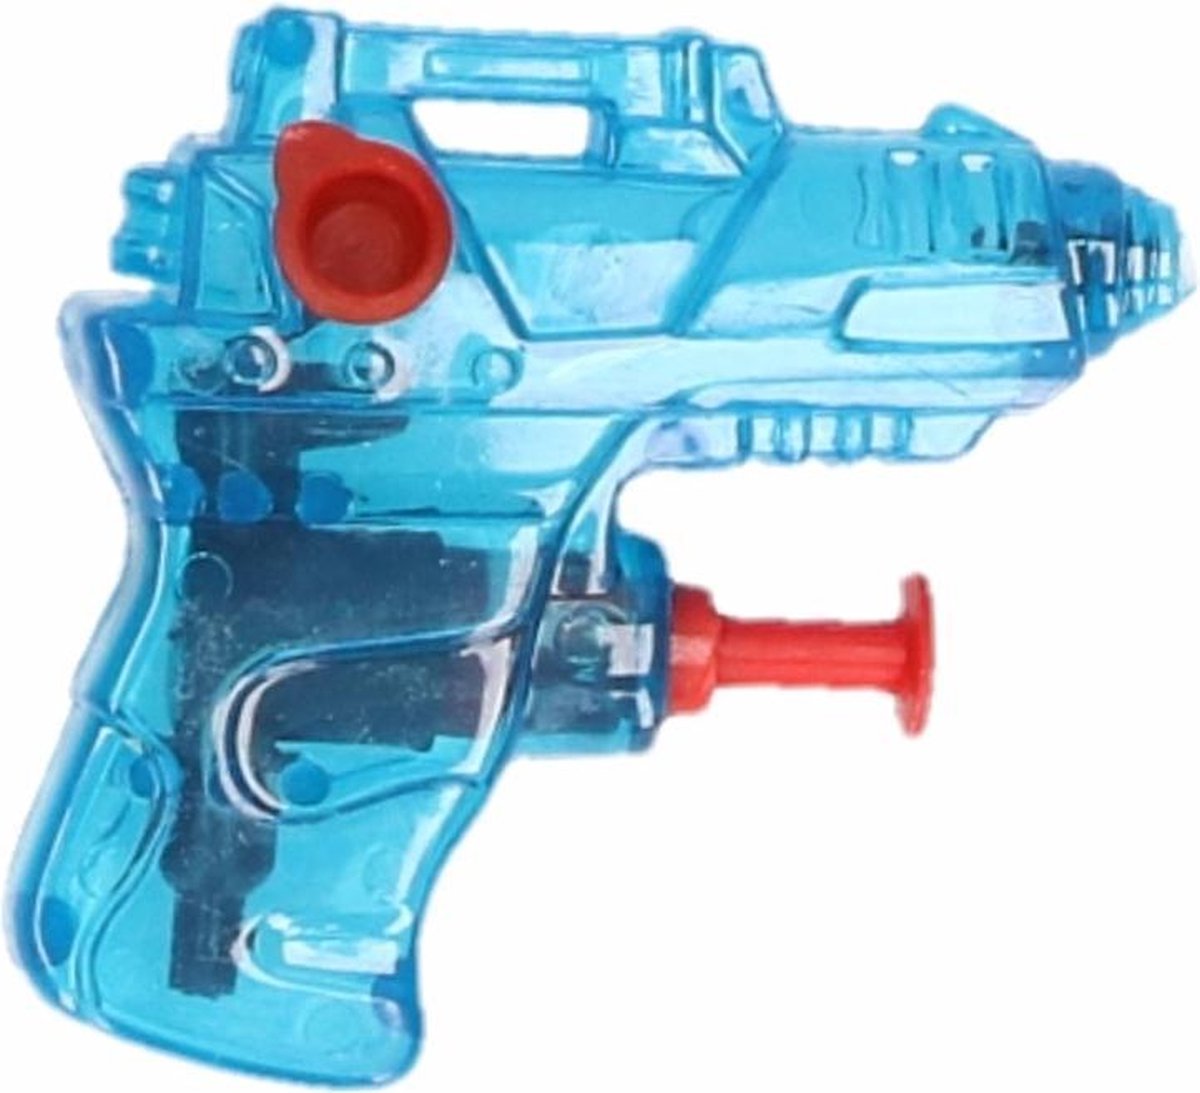 oogsten Milieuactivist Keer terug 100x stuks mini waterpistolen blauw 7 cm | bol.com